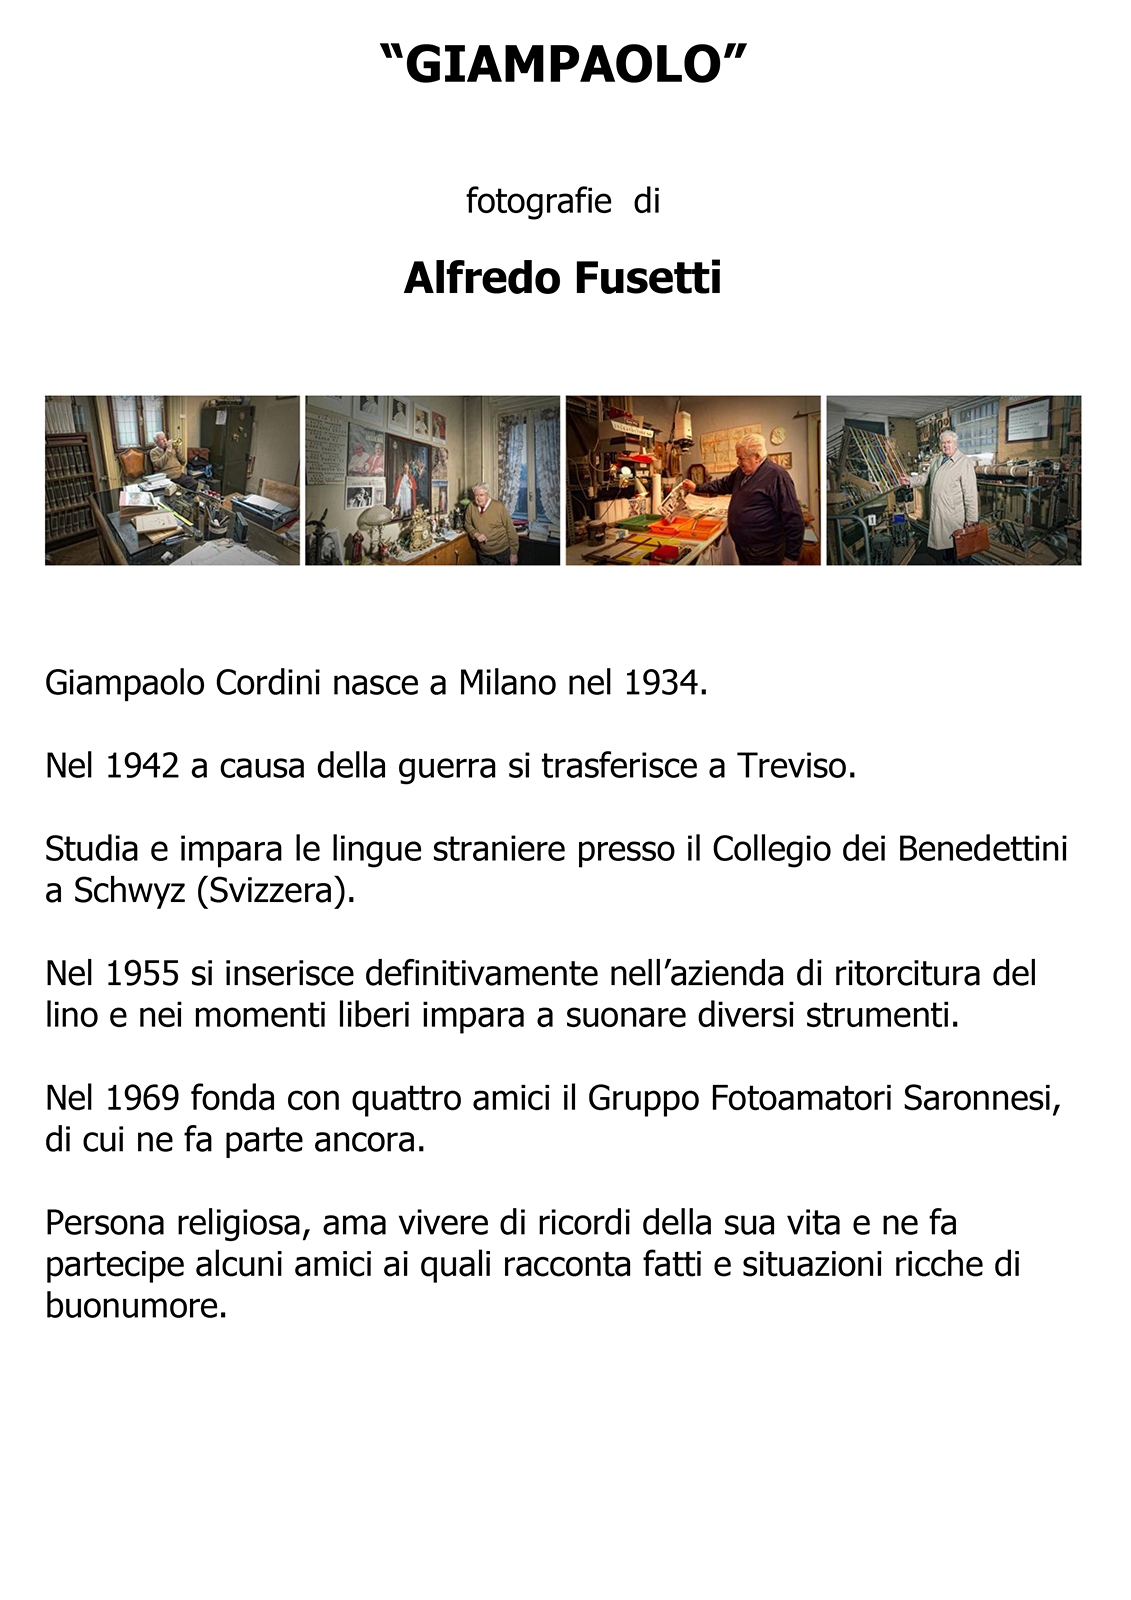 Alfredo Fusetti